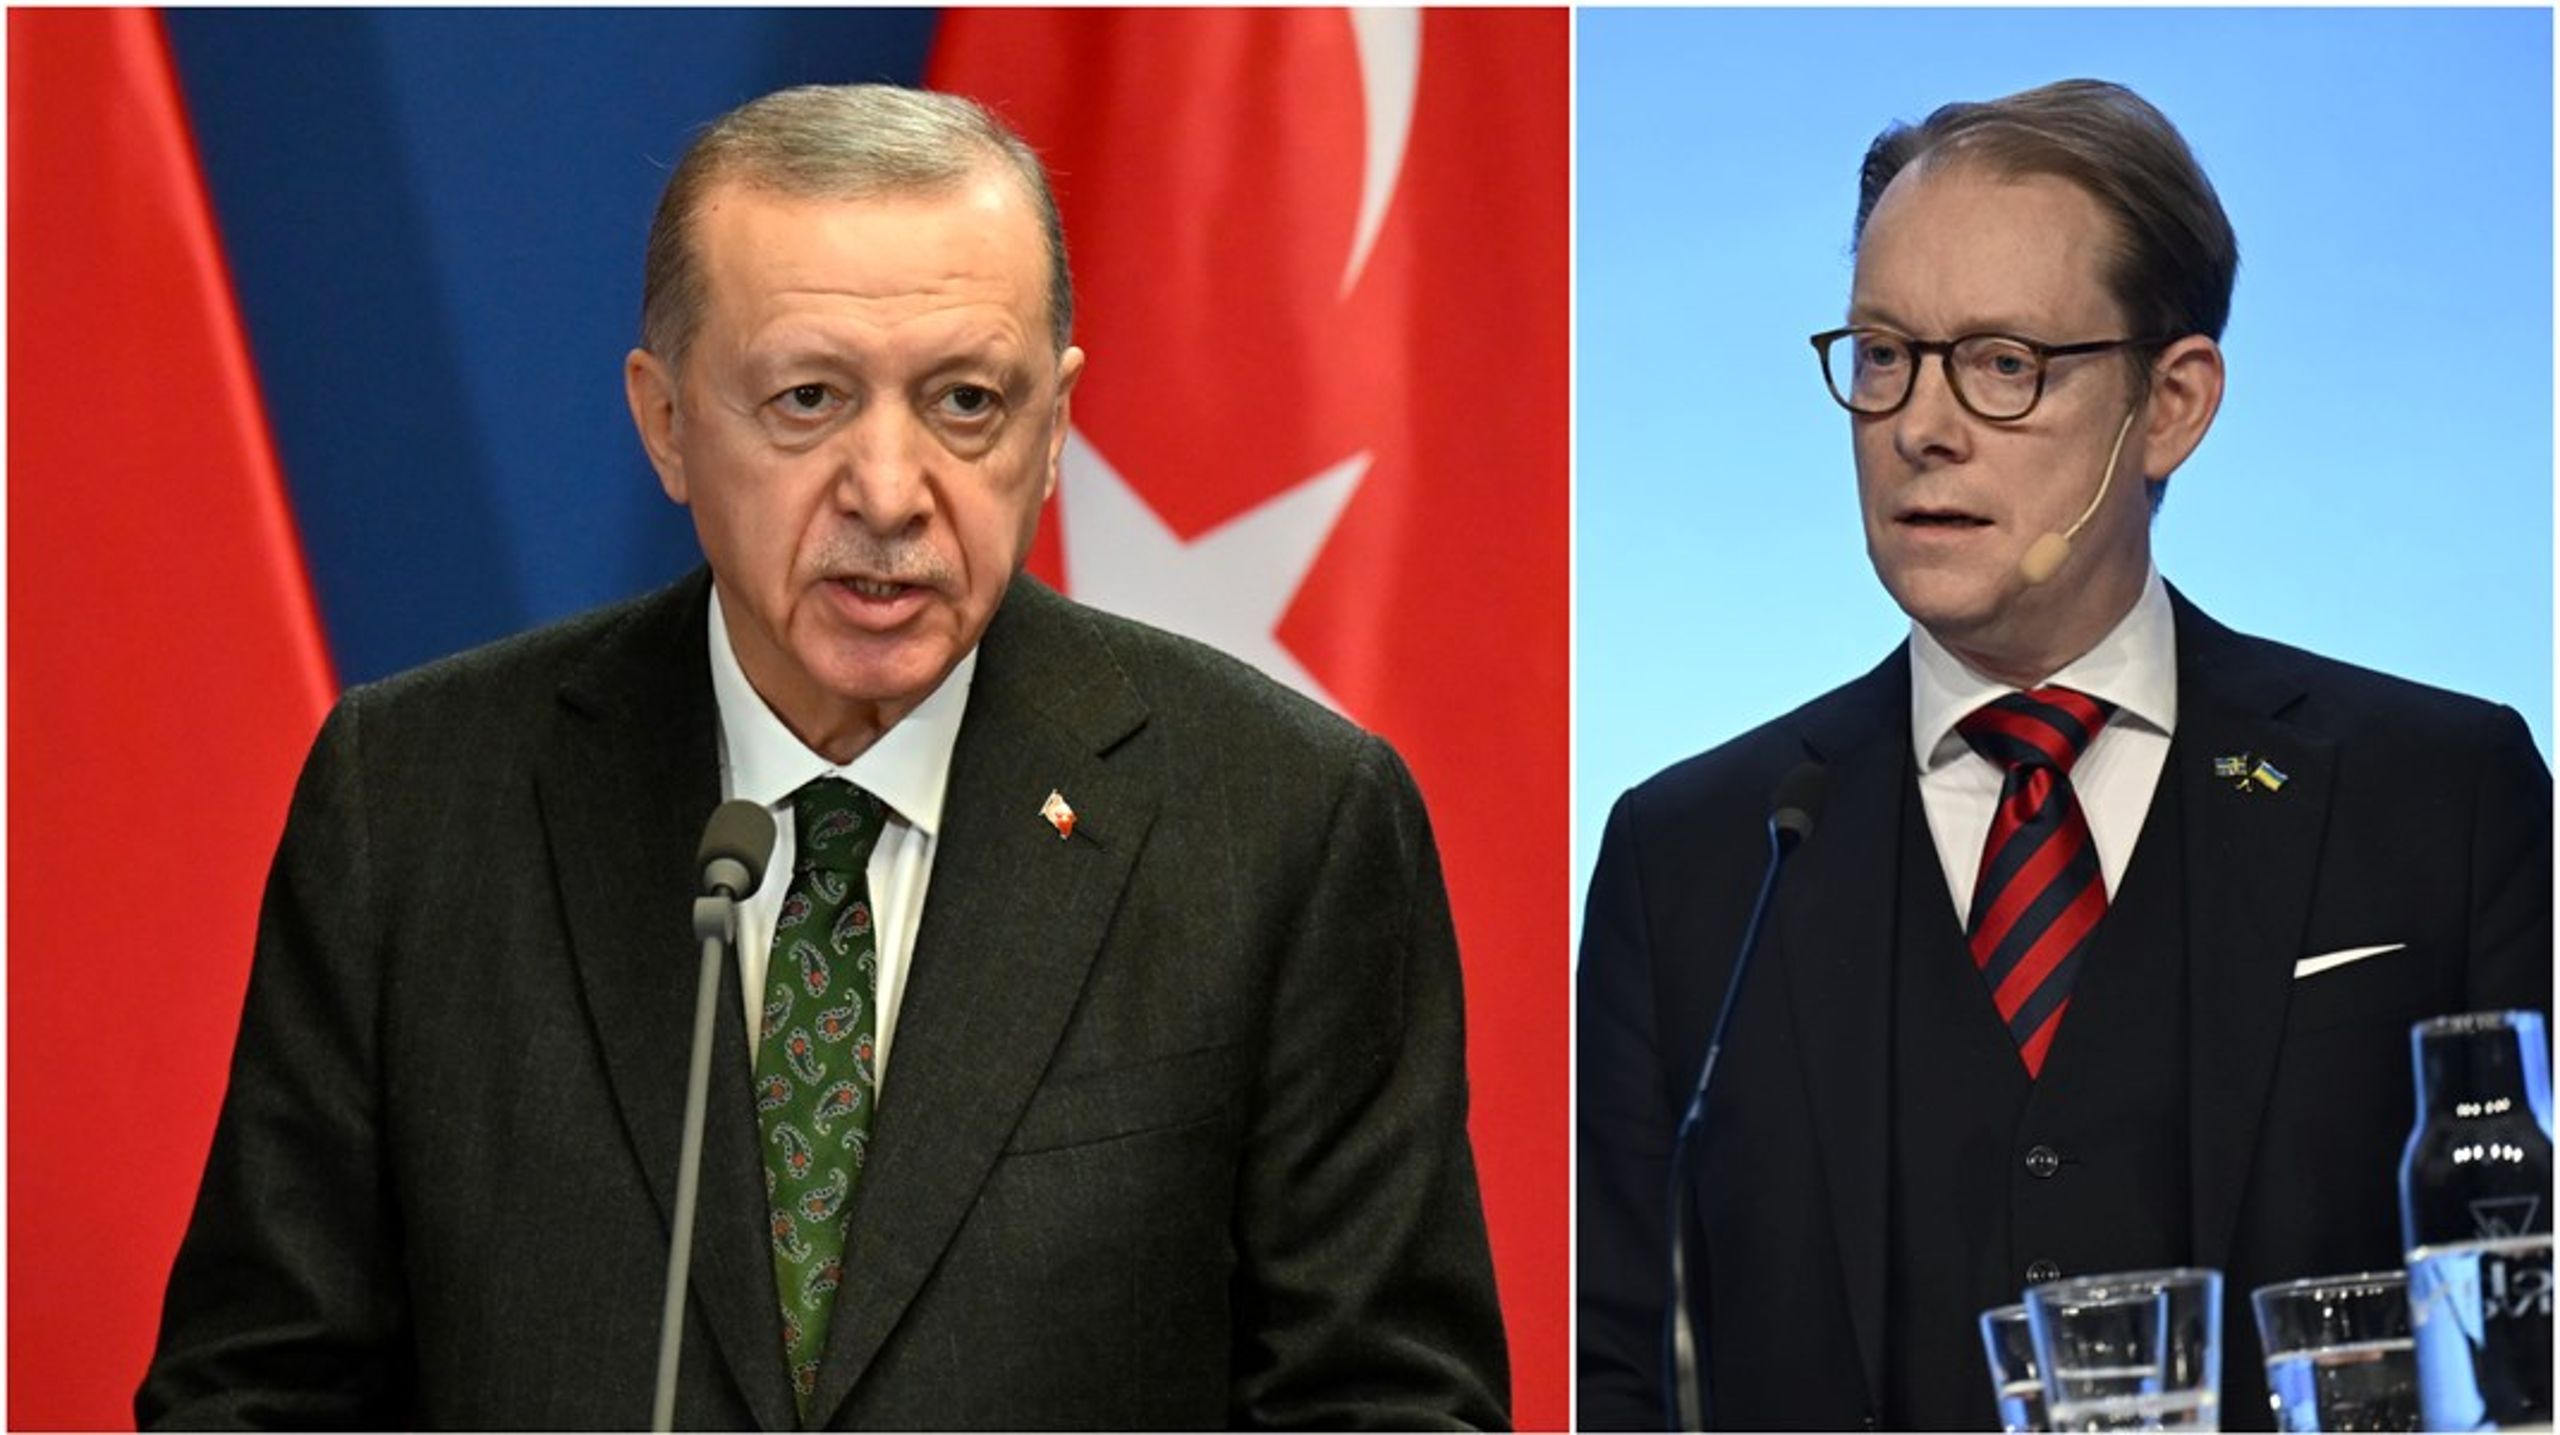 På torsdagen skrev Turkiets president Erdogan under Sveriges Natoansökan efter att den godkänts av det turkiska parlamentet, ett besked som utrikesminister Tobias Billström (M) välkomnar.